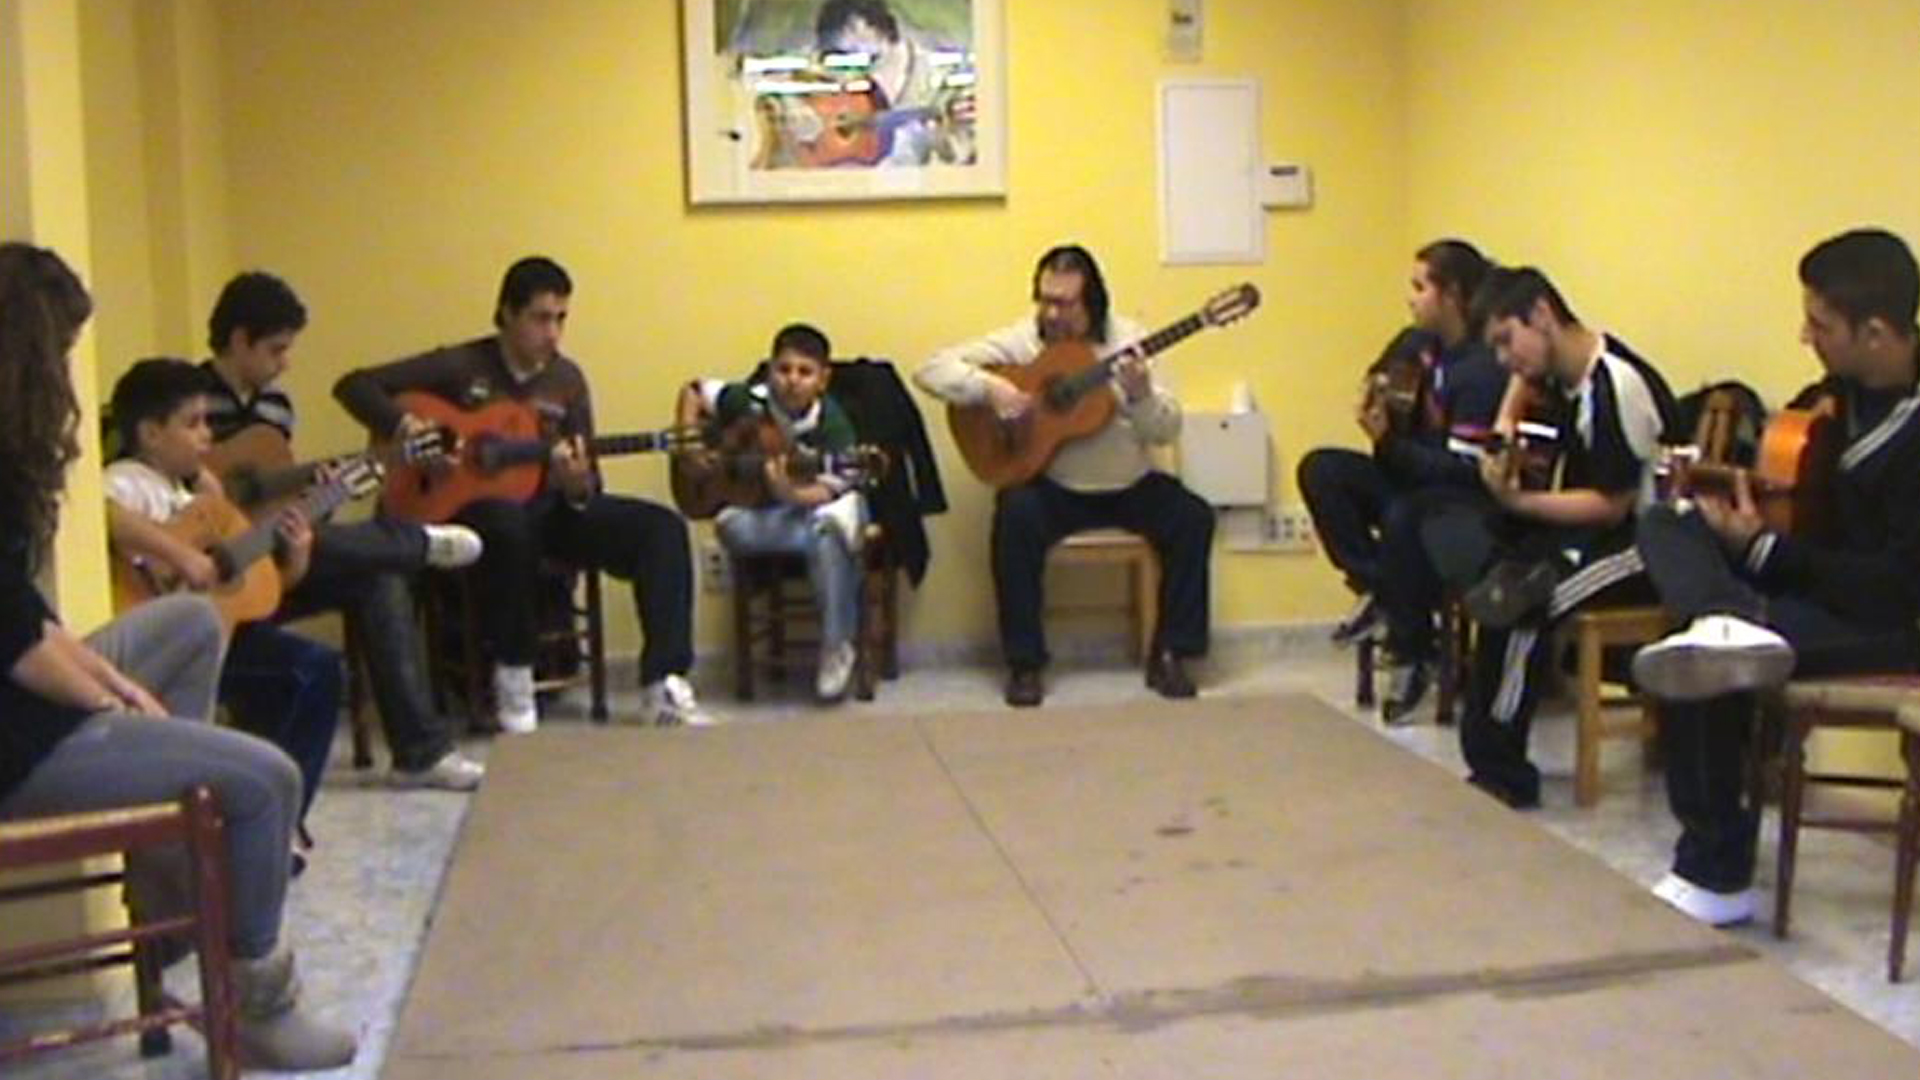 Imagen de una clase de guitarra flamenca en la Escuela del Maestro Entri en el barrio madrileño de Cañorroto, distrito La Latina-Carabanchel.